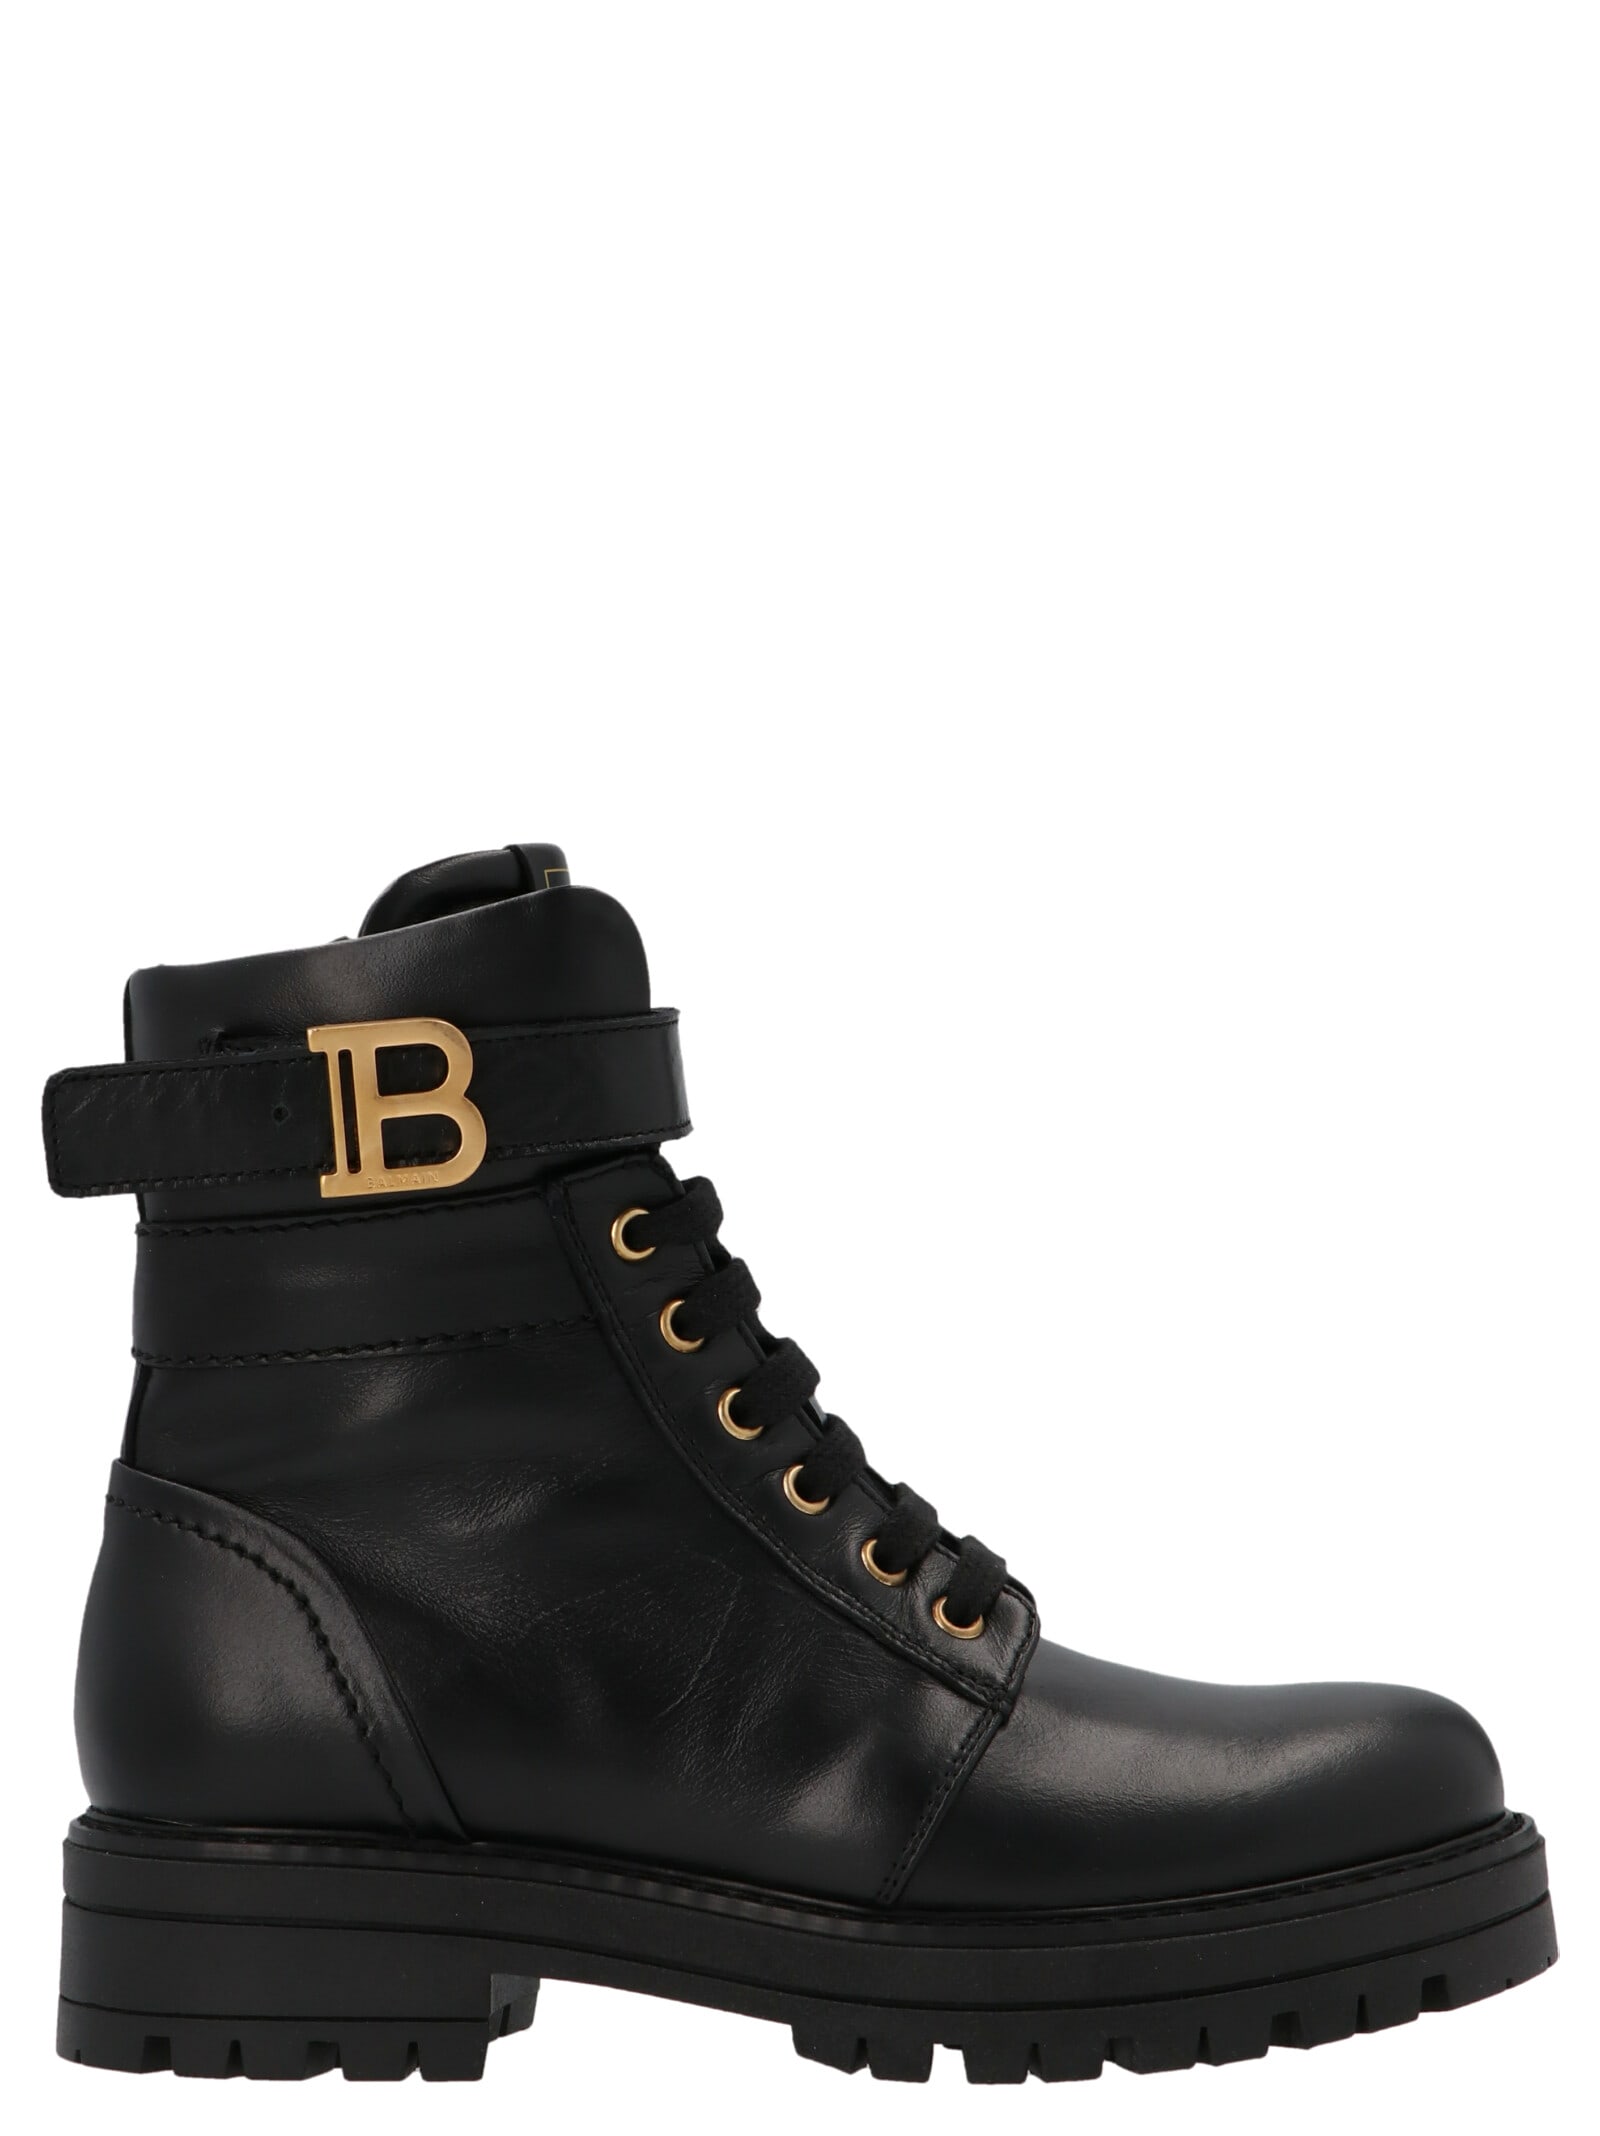 Buy Balmain b Shoes online, shop Balmain shoes with free shipping